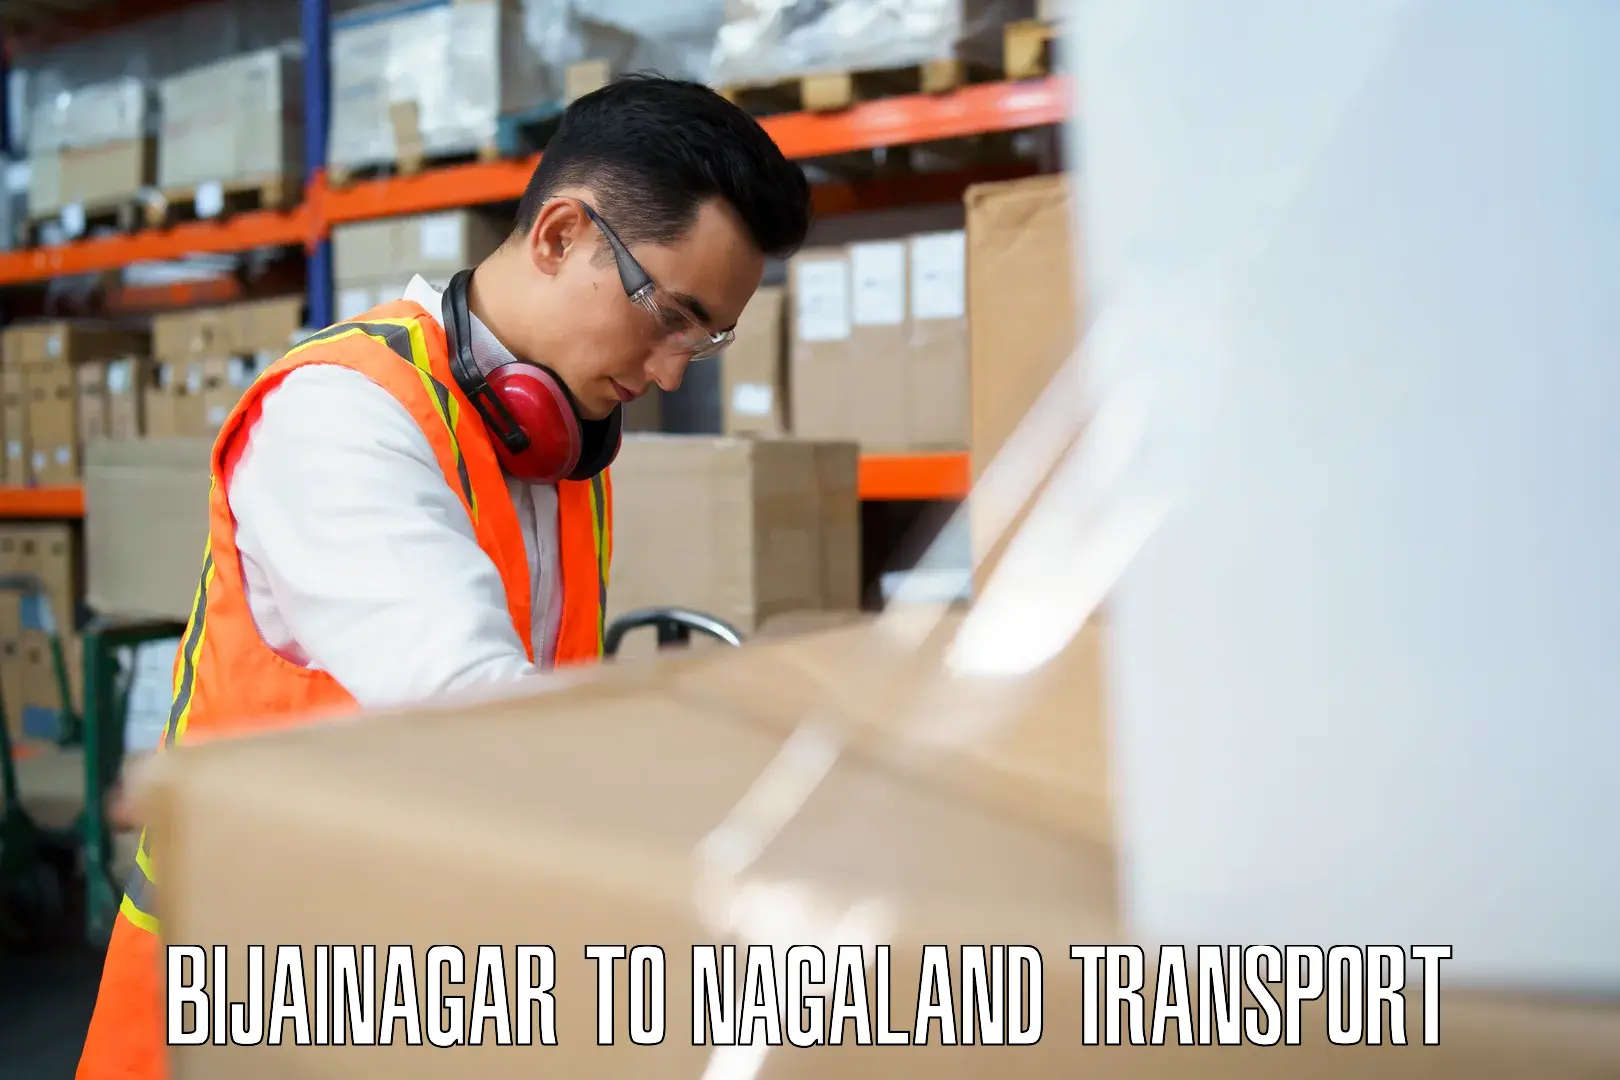 Daily transport service Bijainagar to Nagaland